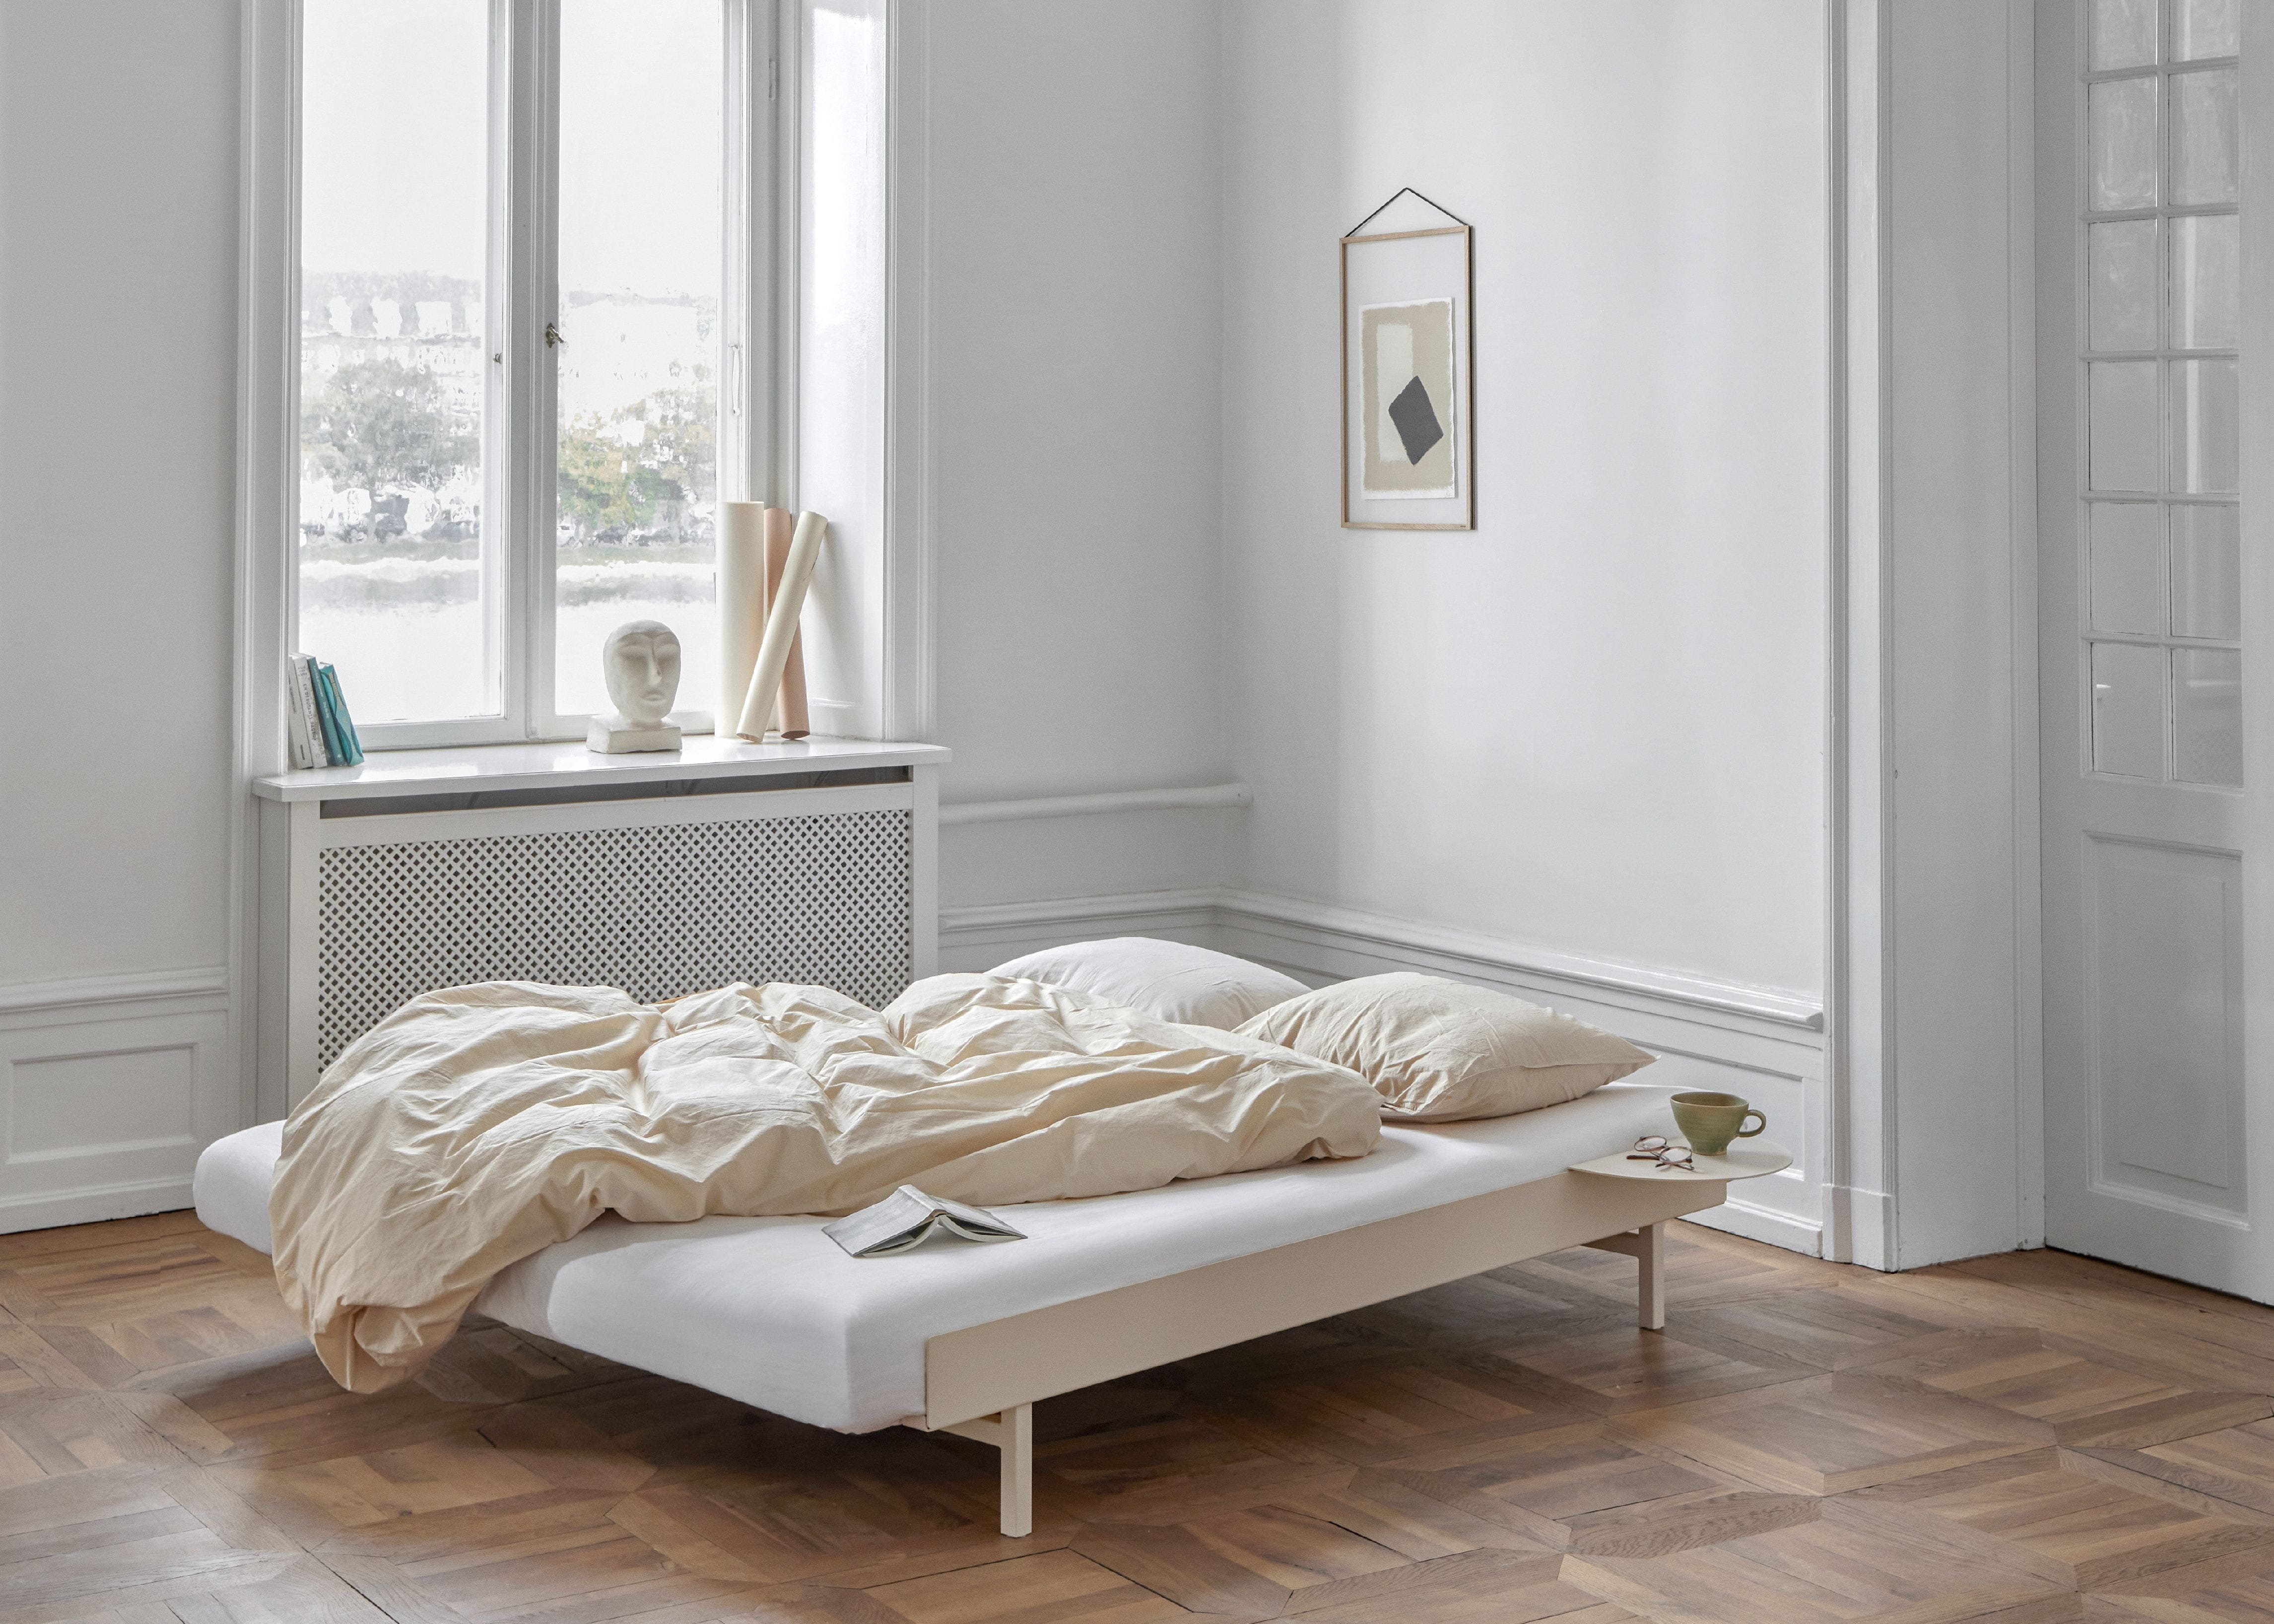 Moebe -Bett mit Bettlatten und 2 Nachttischen 160 cm, Sand